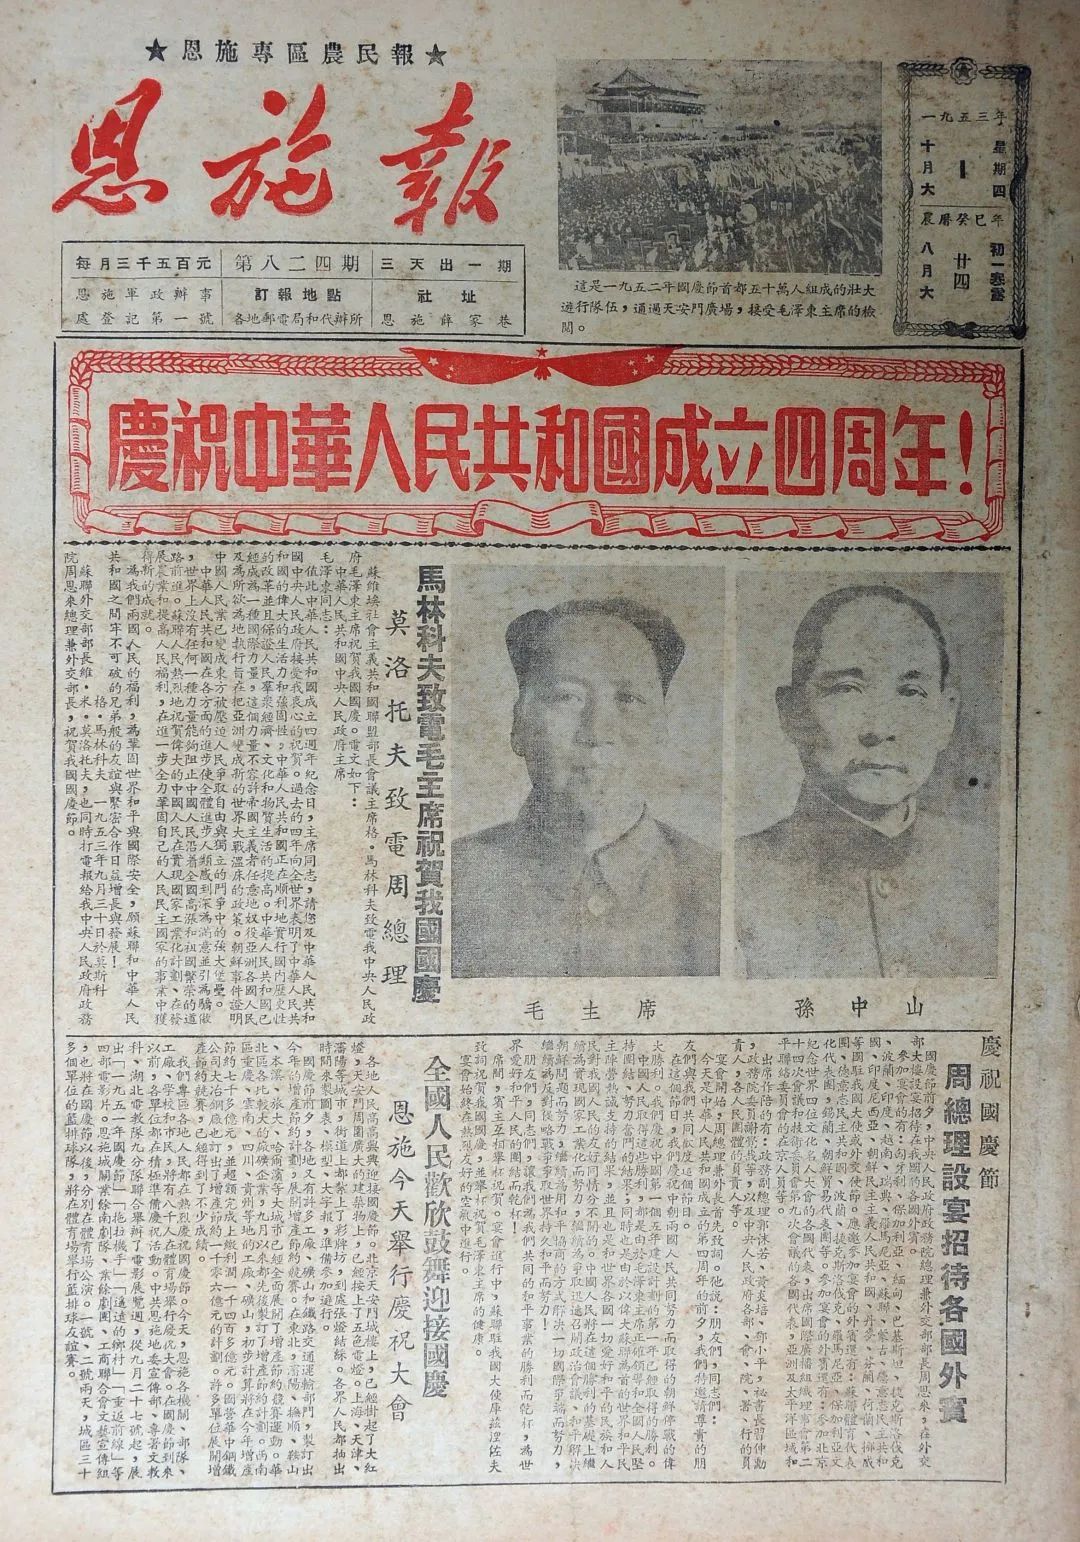 钱塘书画研究社举办共和国之路·庆祝新中国成立七十一周年老报纸展